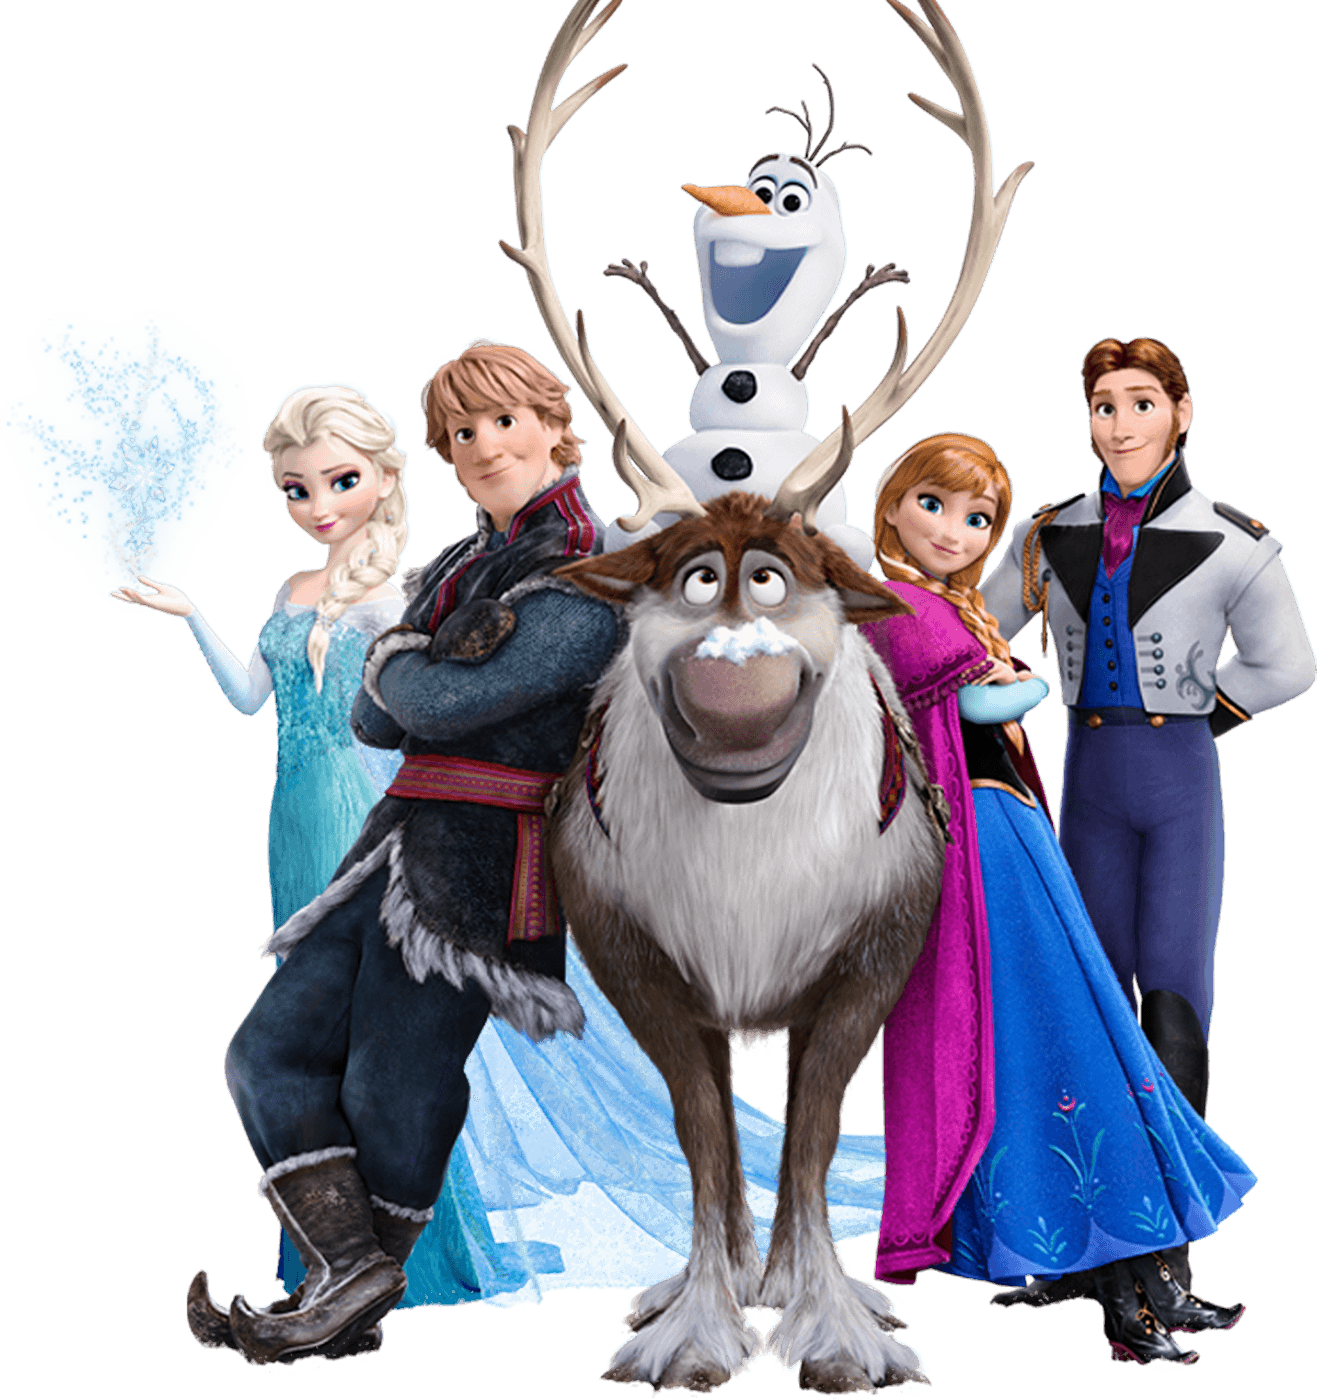 Convite Aniversário da Frozen, anna e elsa - Edite grátis com